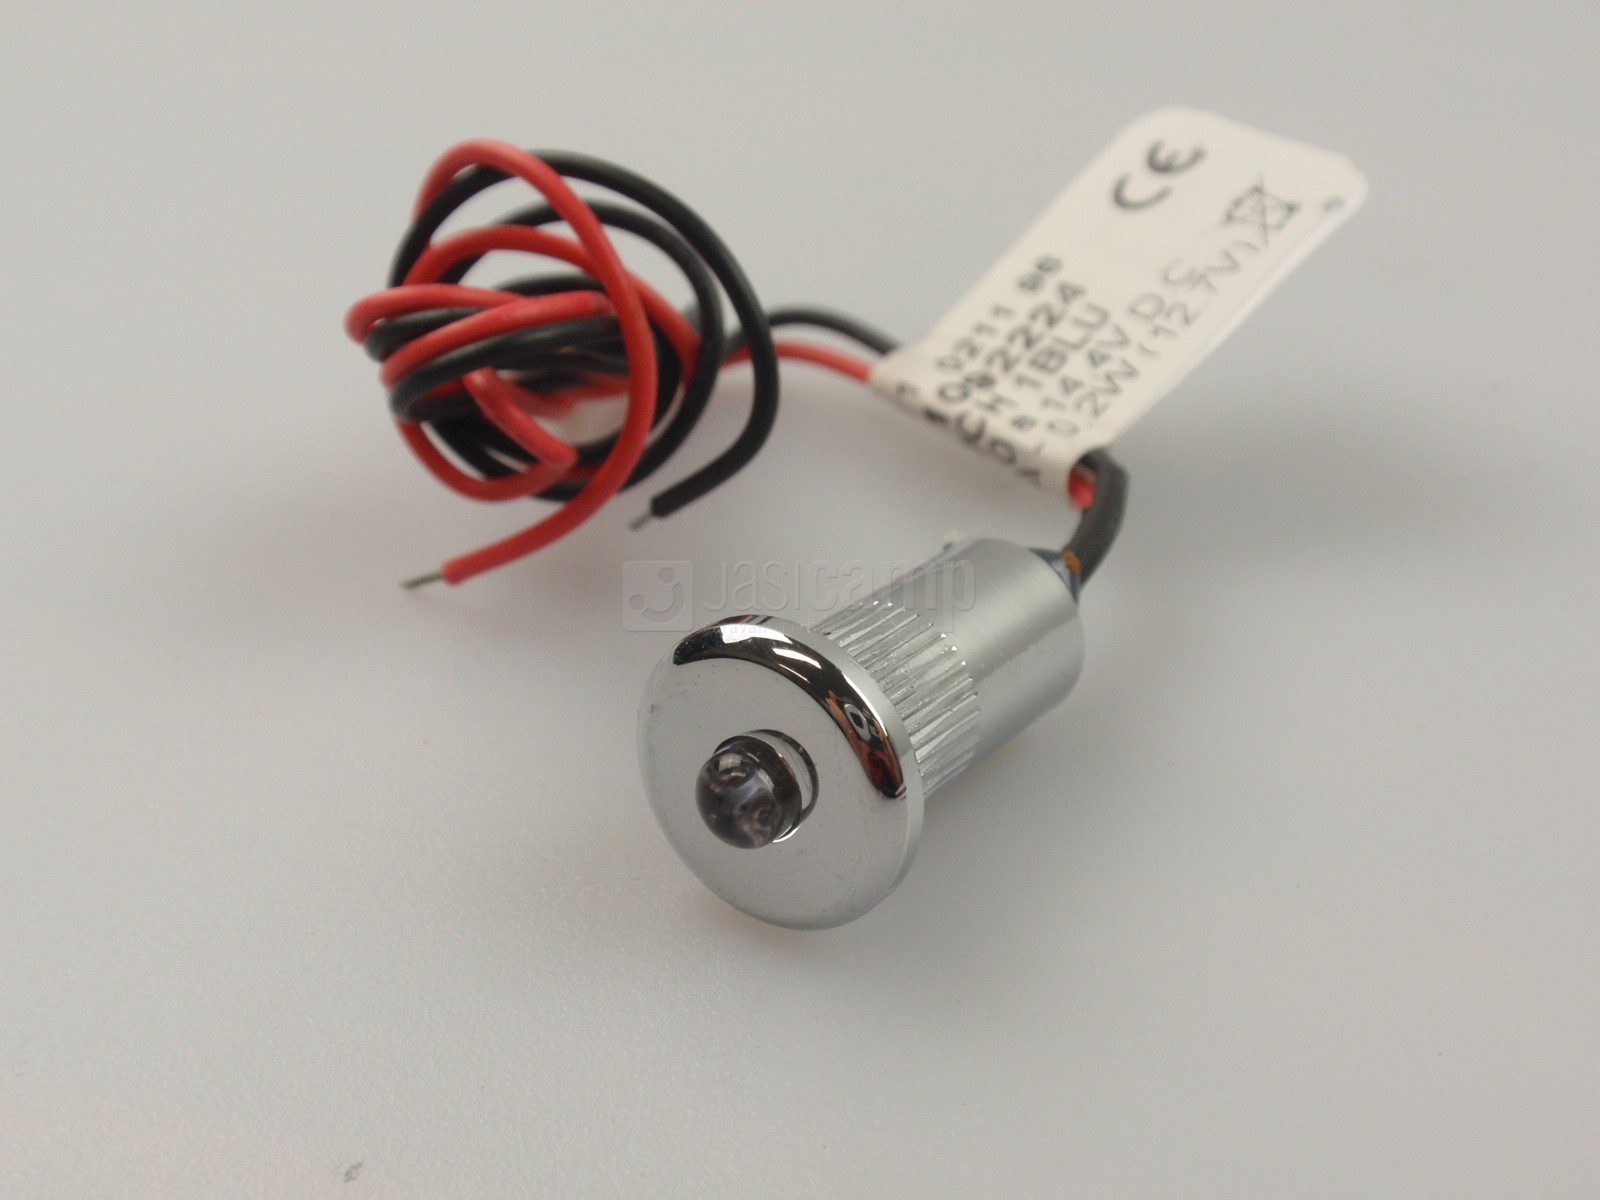 toekomst schoner Toegepast Mini Led lampje inbouw BLAUW diameter 15mm. nr.833871